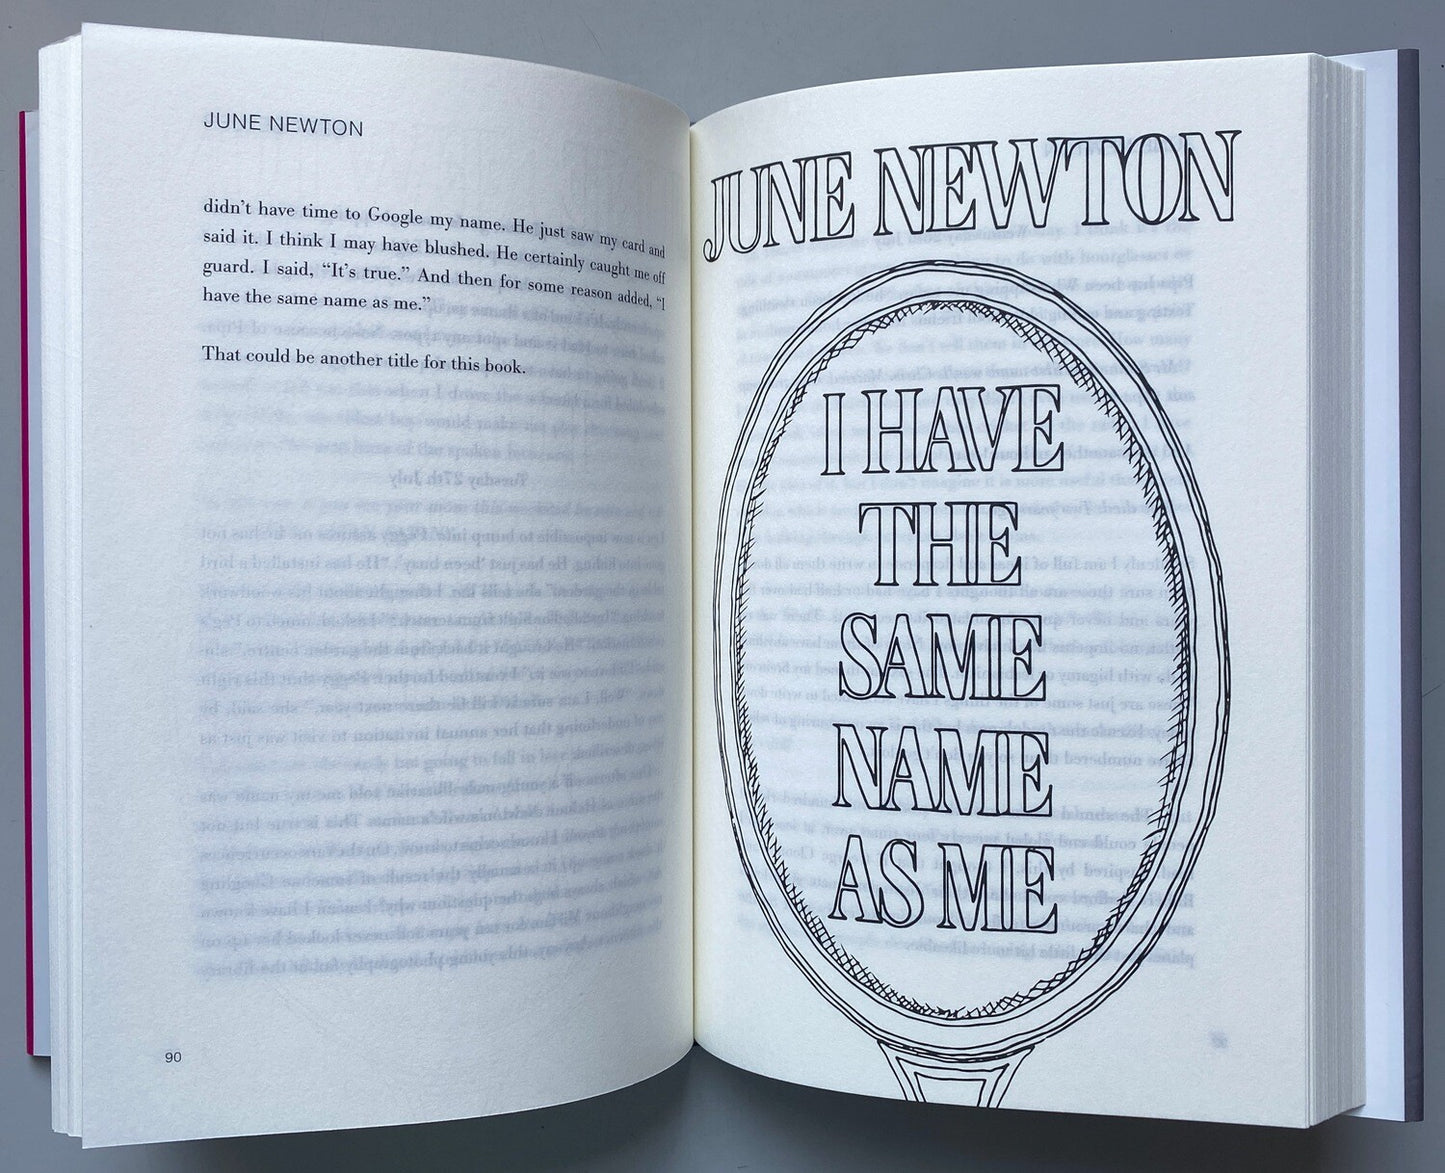 June Newton - Best Seller